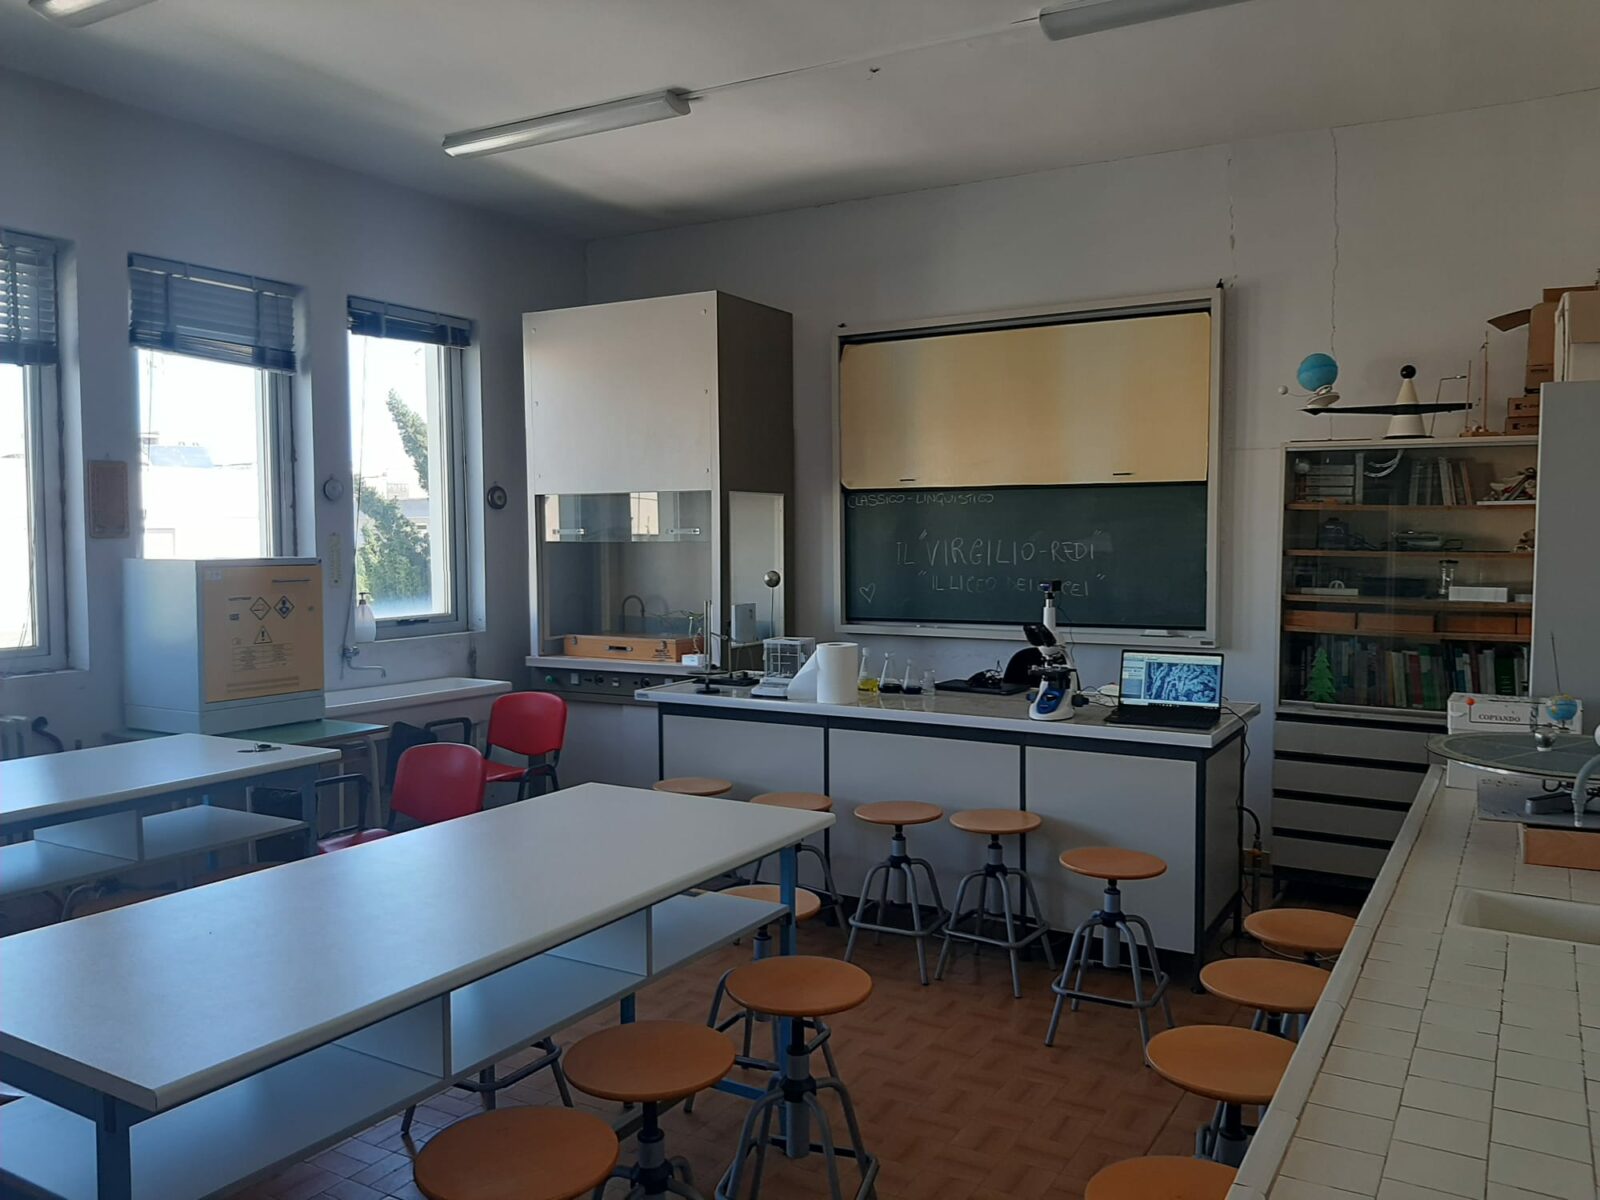 Laboratorio di Scienze Lecce